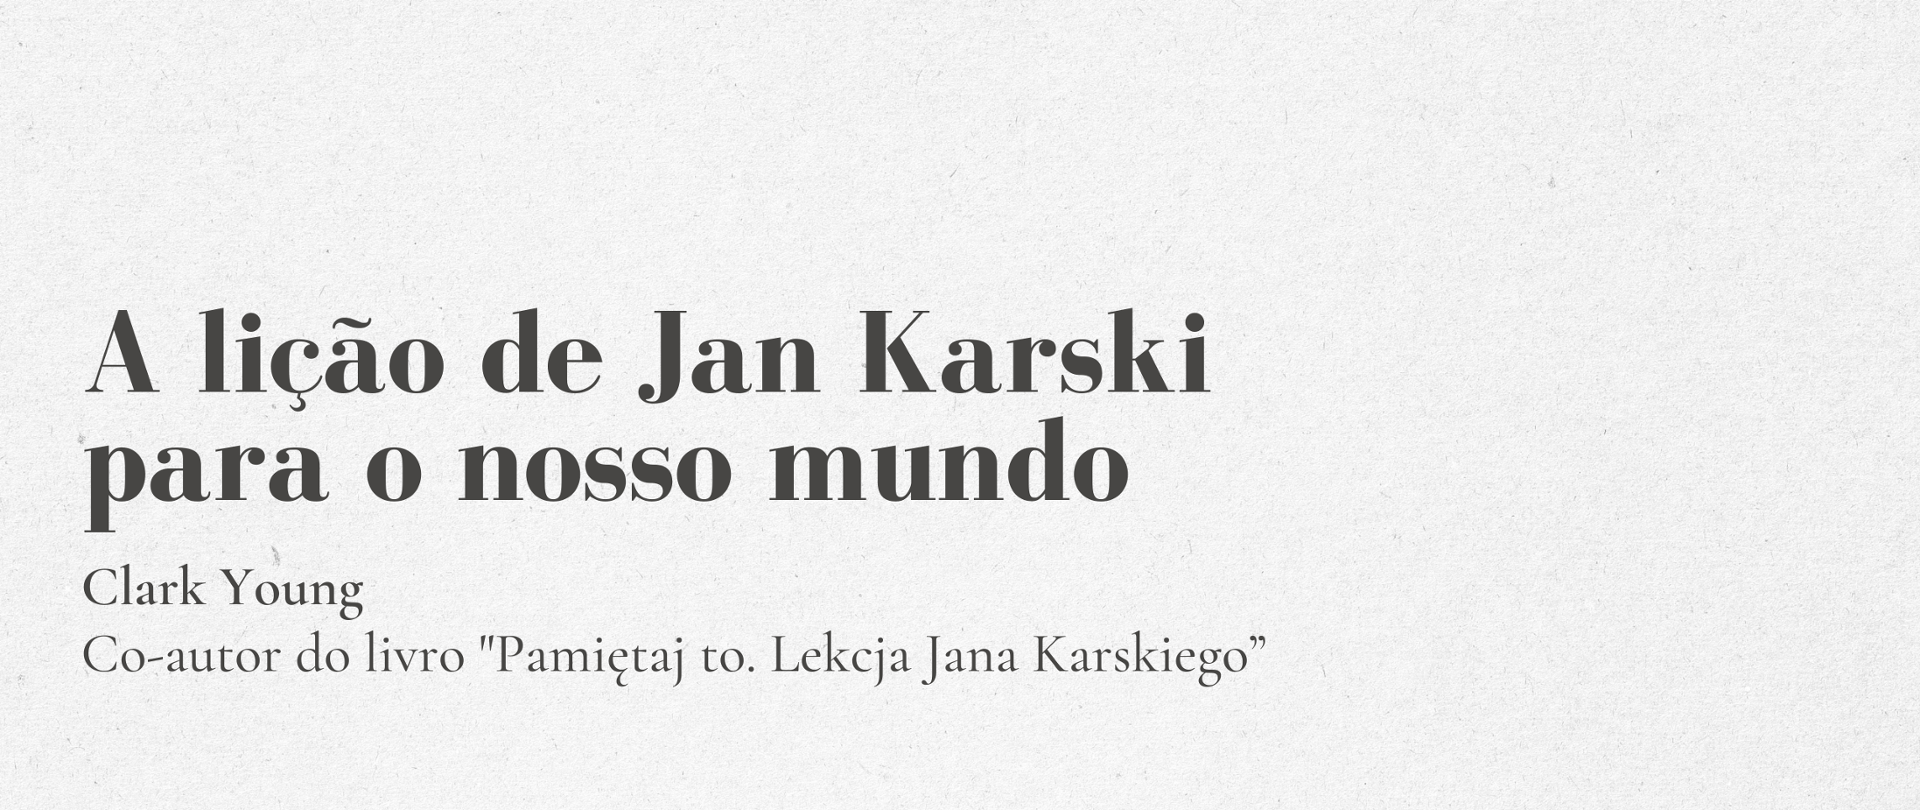 A lição de Jan Karski para o nosso mundo